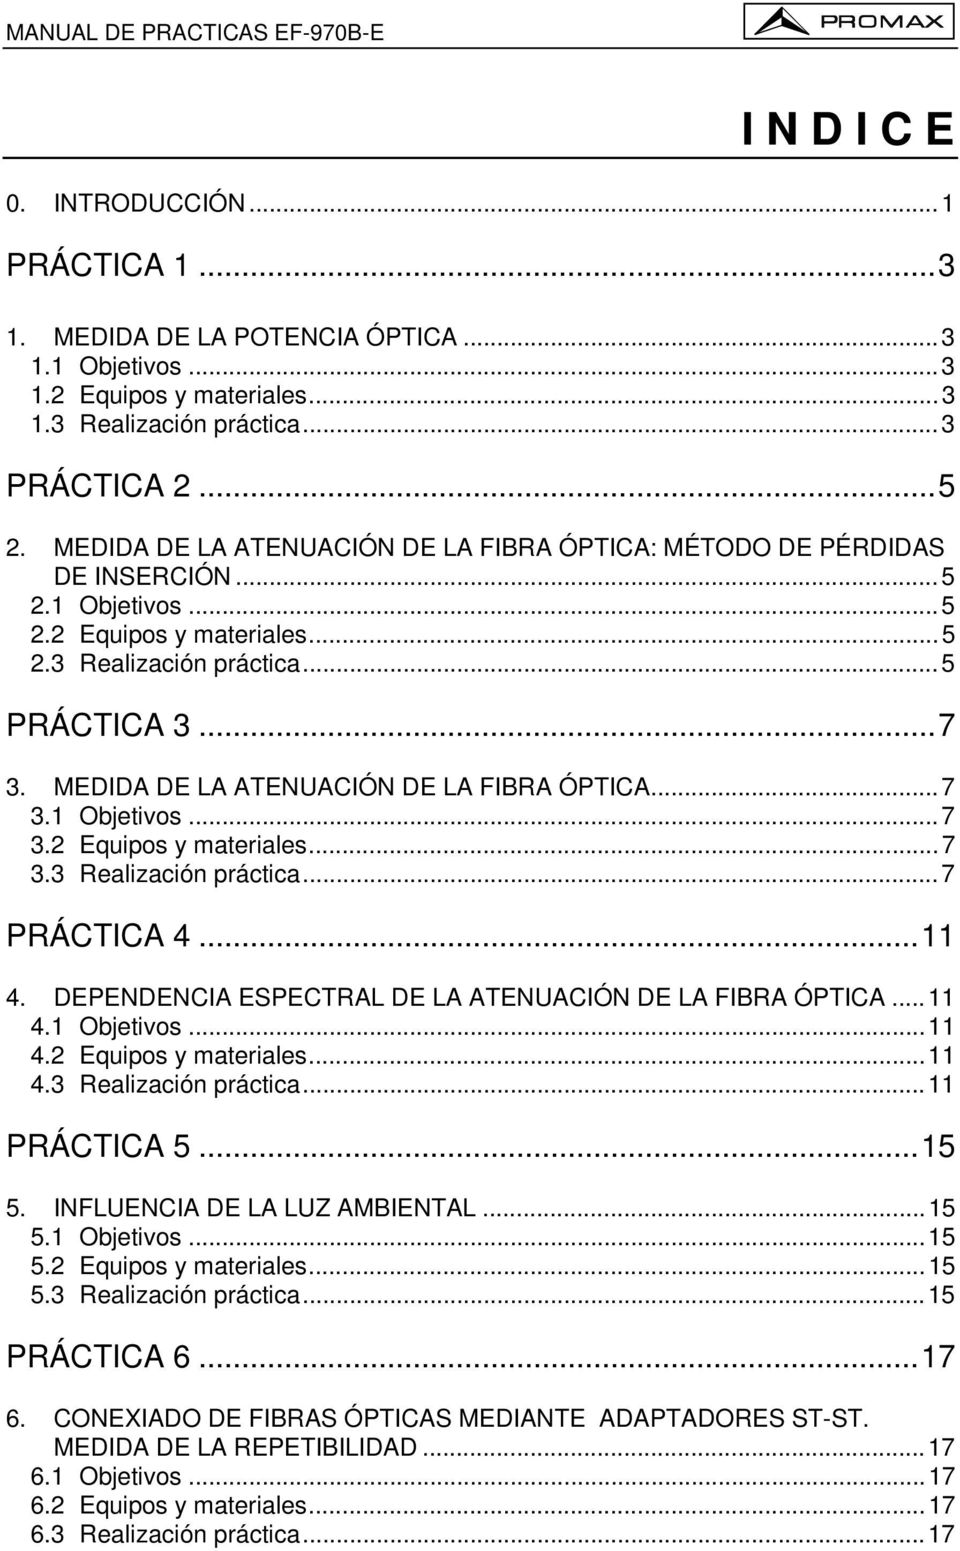 MEDIDA DE LA ATENUACIÓN DE LA FIBRA ÓPTICA...7 3.1 Objetivos...7 3.2 Equipos y materiales...7 3.3 Realización práctica...7 PRÁCTICA 4...11 4. DEPENDENCIA ESPECTRAL DE LA ATENUACIÓN DE LA FIBRA ÓPTICA.